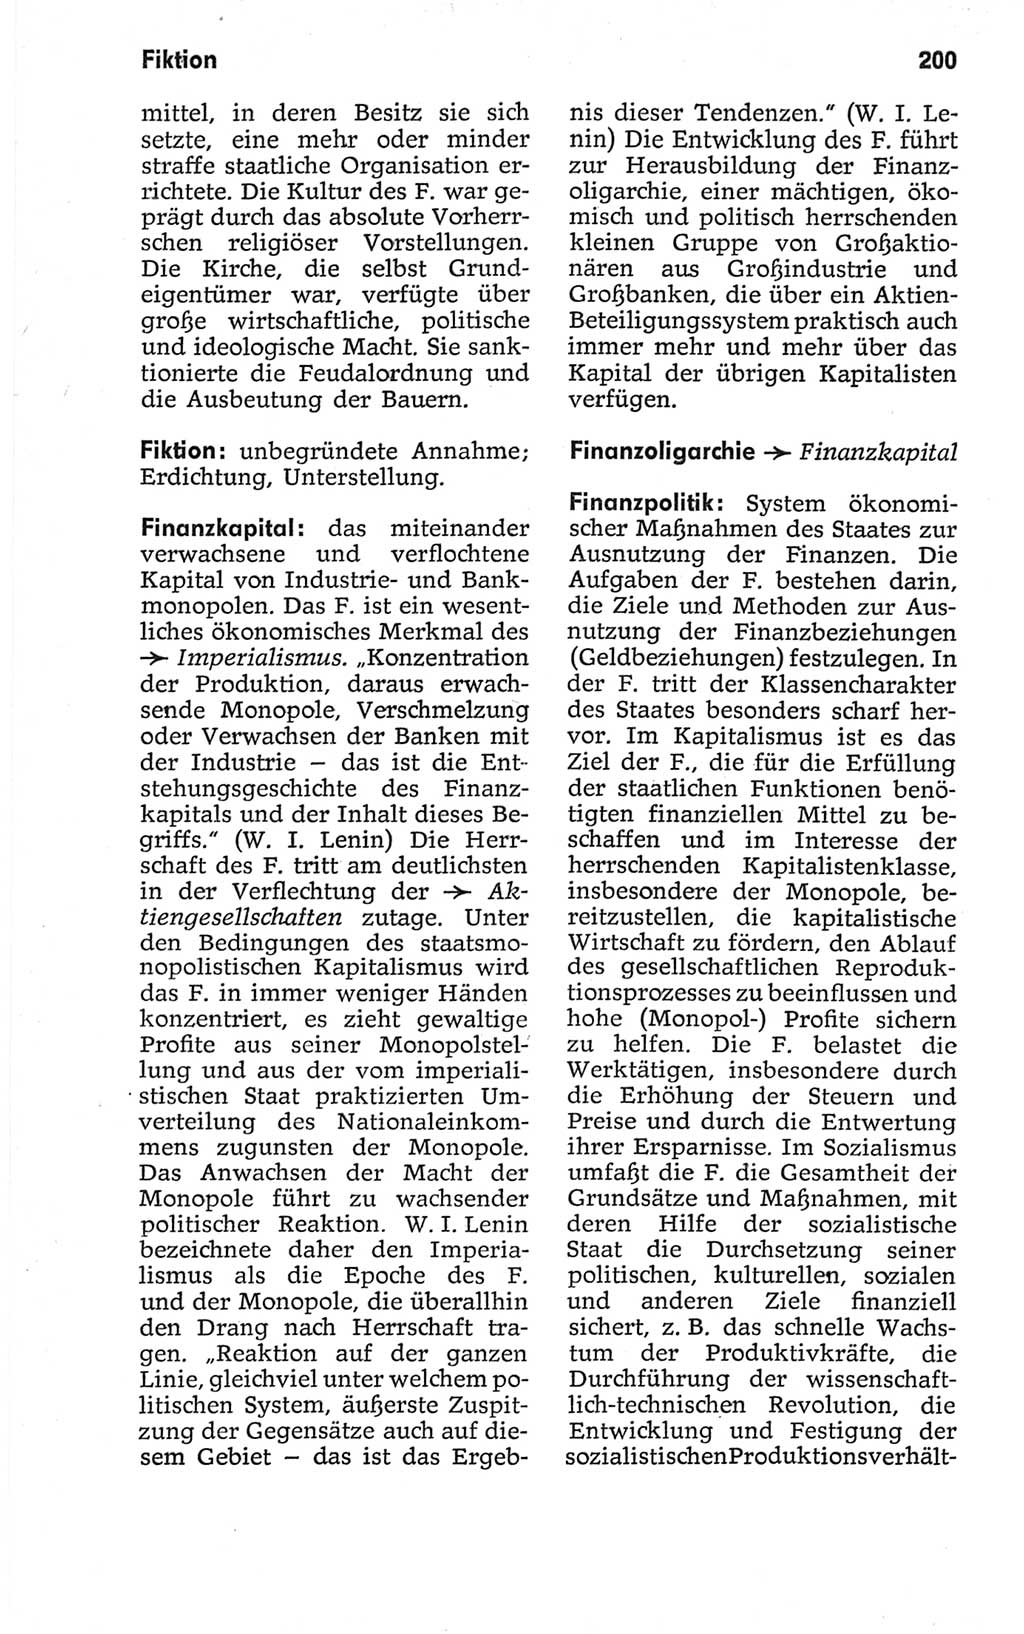 Kleines politisches Wörterbuch [Deutsche Demokratische Republik (DDR)] 1967, Seite 200 (Kl. pol. Wb. DDR 1967, S. 200)